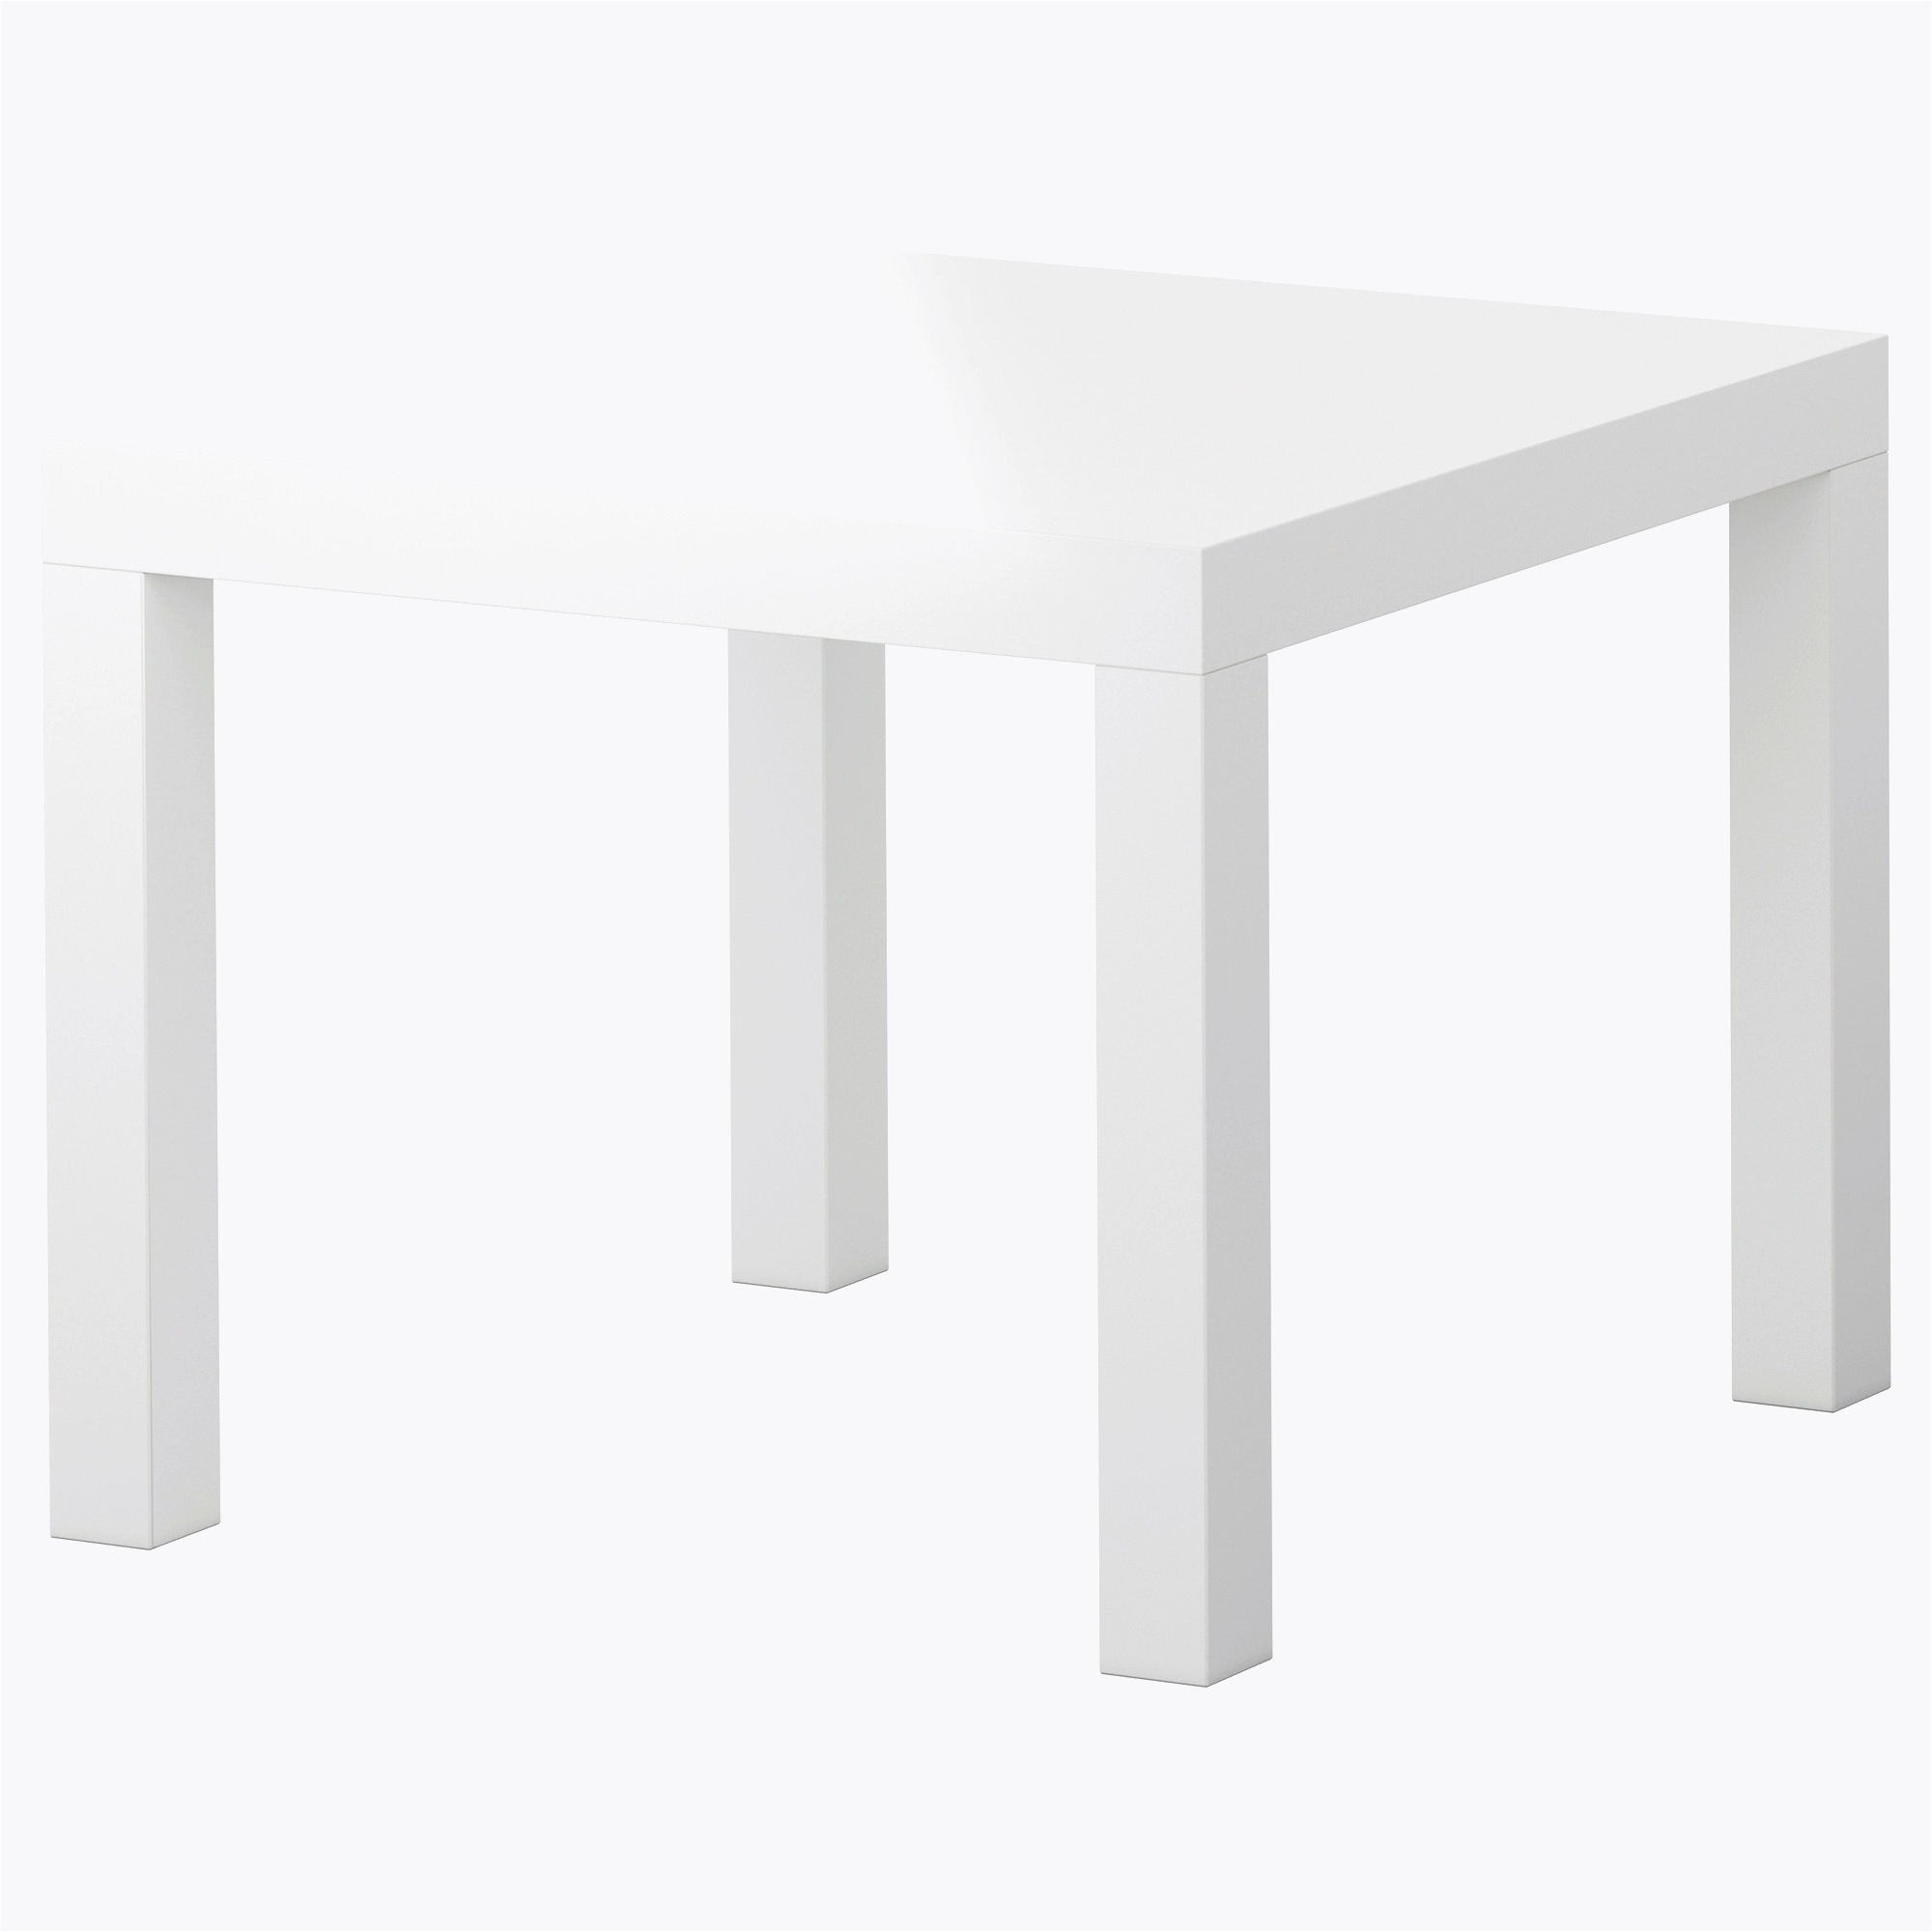 Chaise Et Table De Jardin Best Of Table Basse Relevable Extensible Ikea Nouveau Tables De